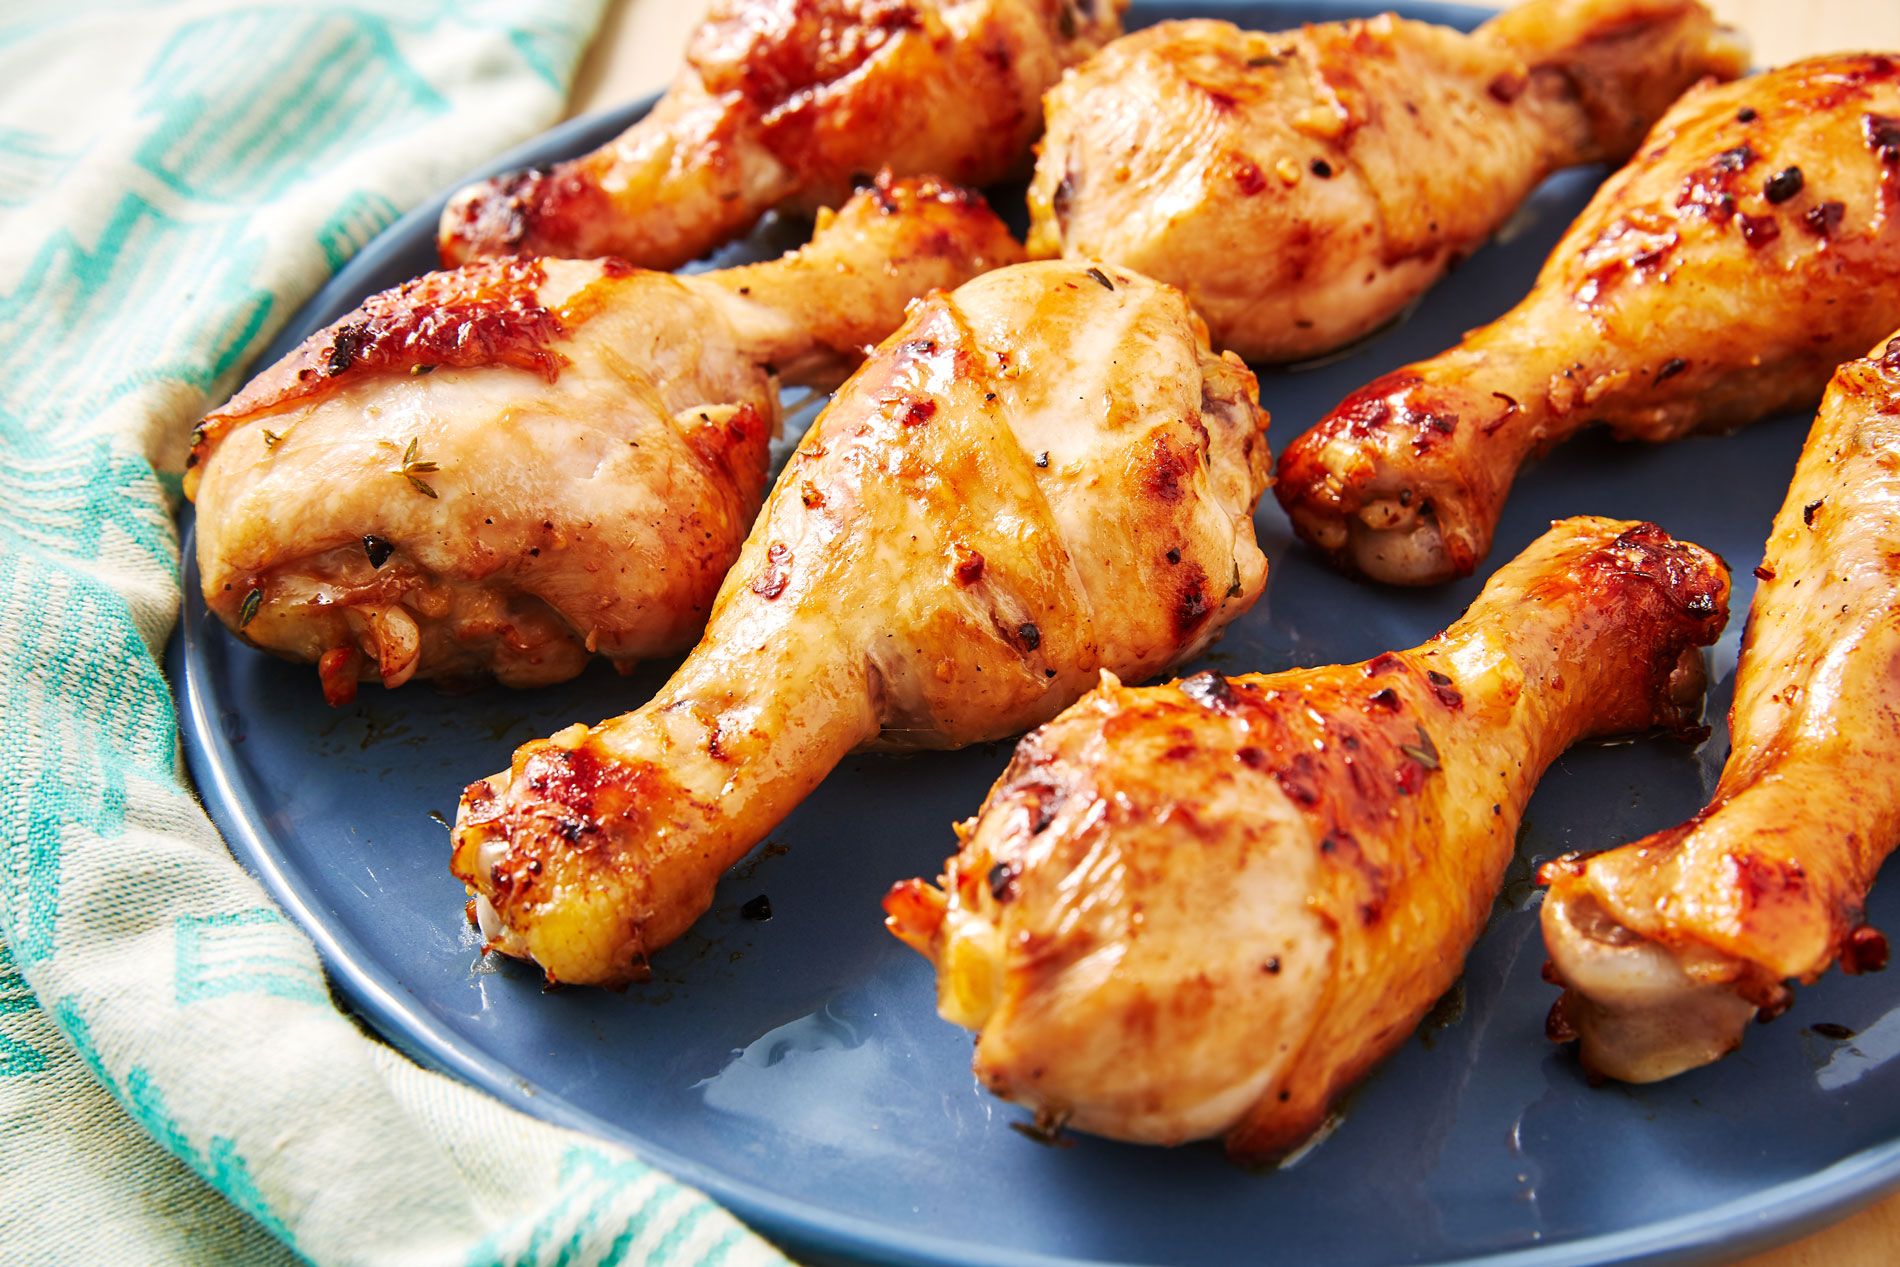 Thịt gà có tính nóng nên dễ gây ra hiện tượng sưng và mưng mủ